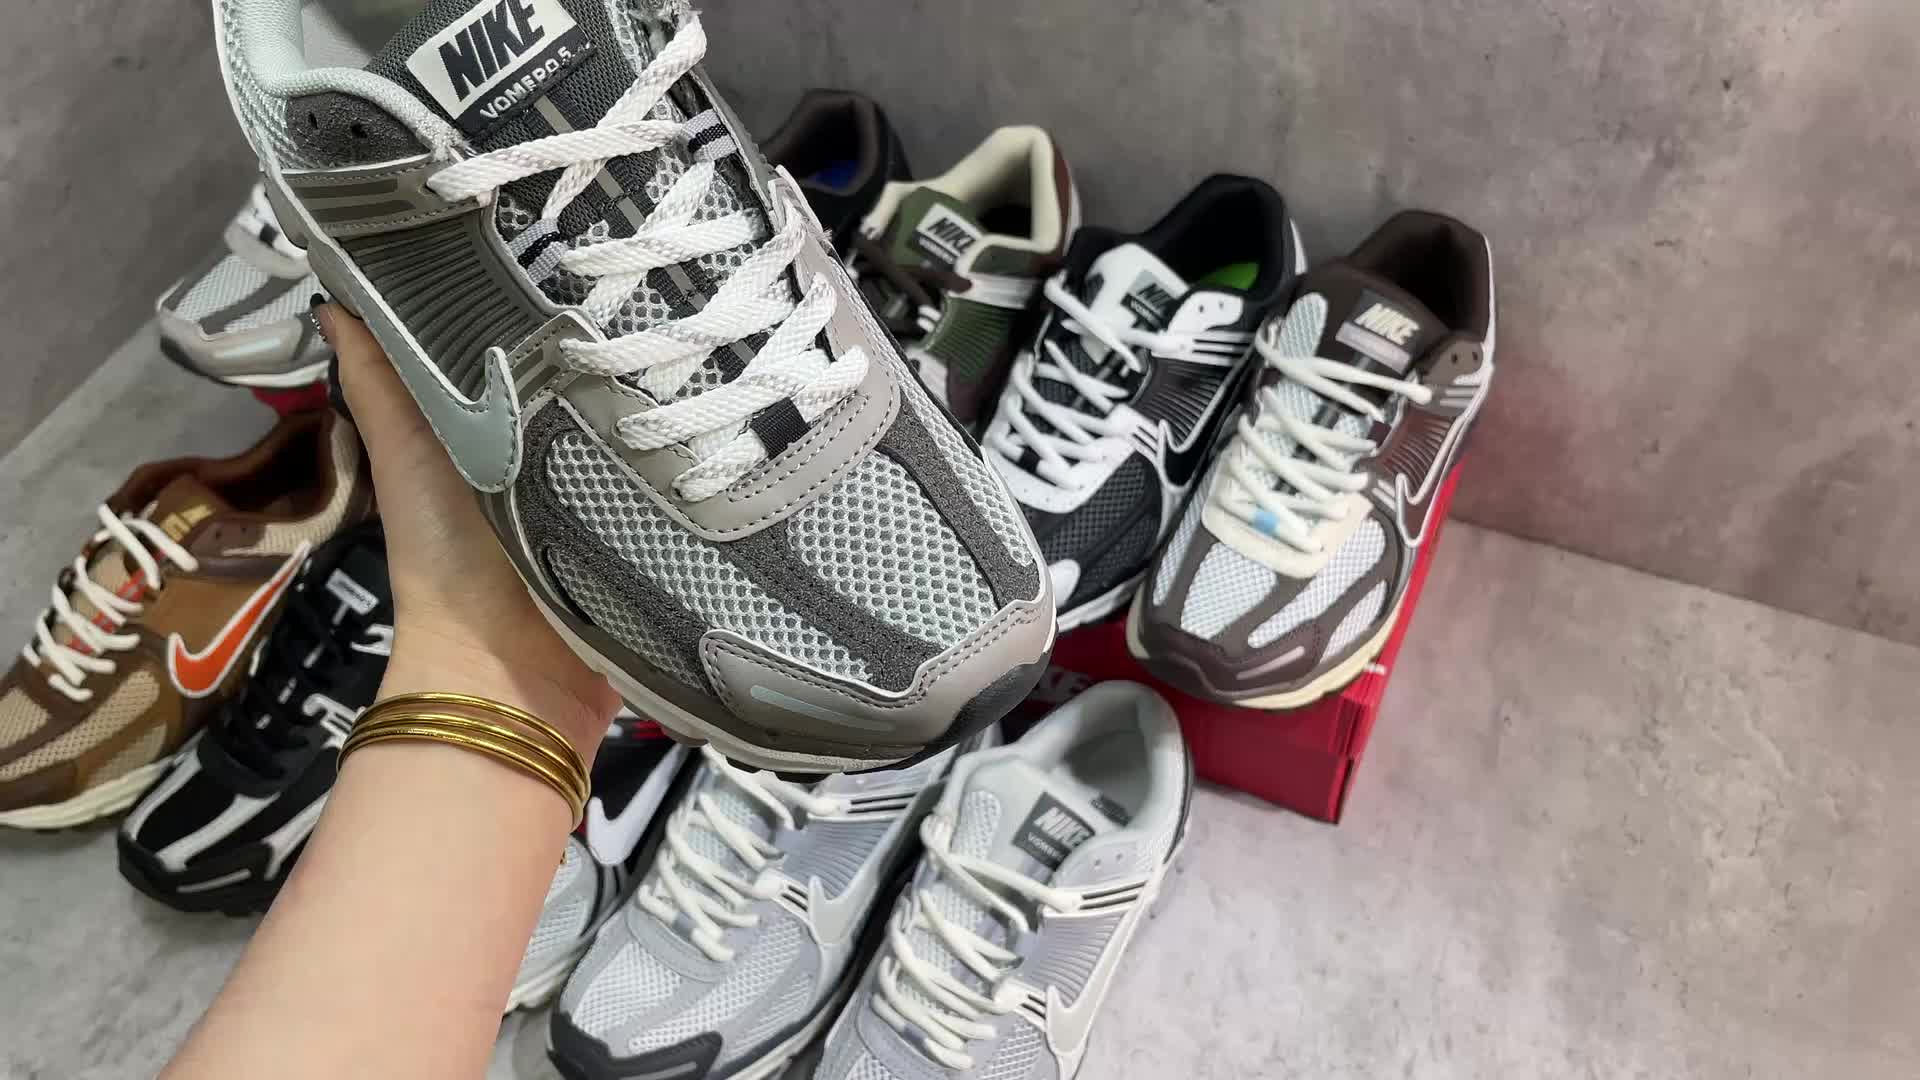 Nike-Men shoes Code: XS6615 $: 75USD